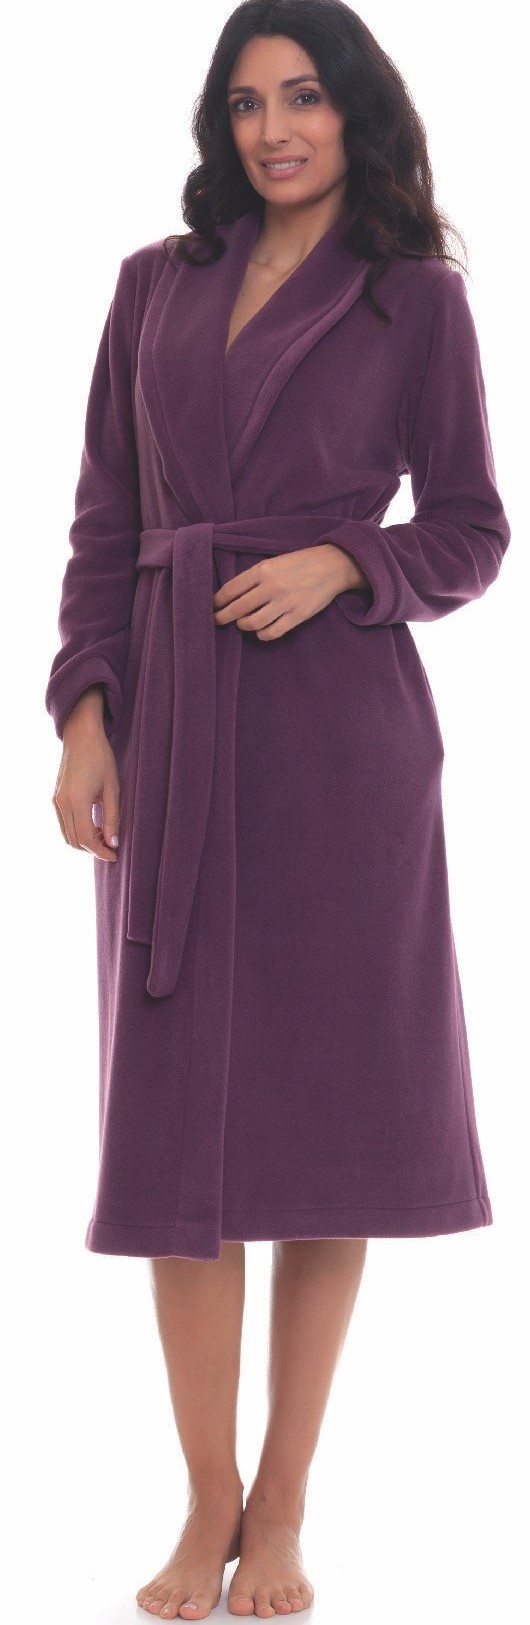 Vestaglia donna invernale lunga sciallata pile - Fleece winter woman's  dressing gown